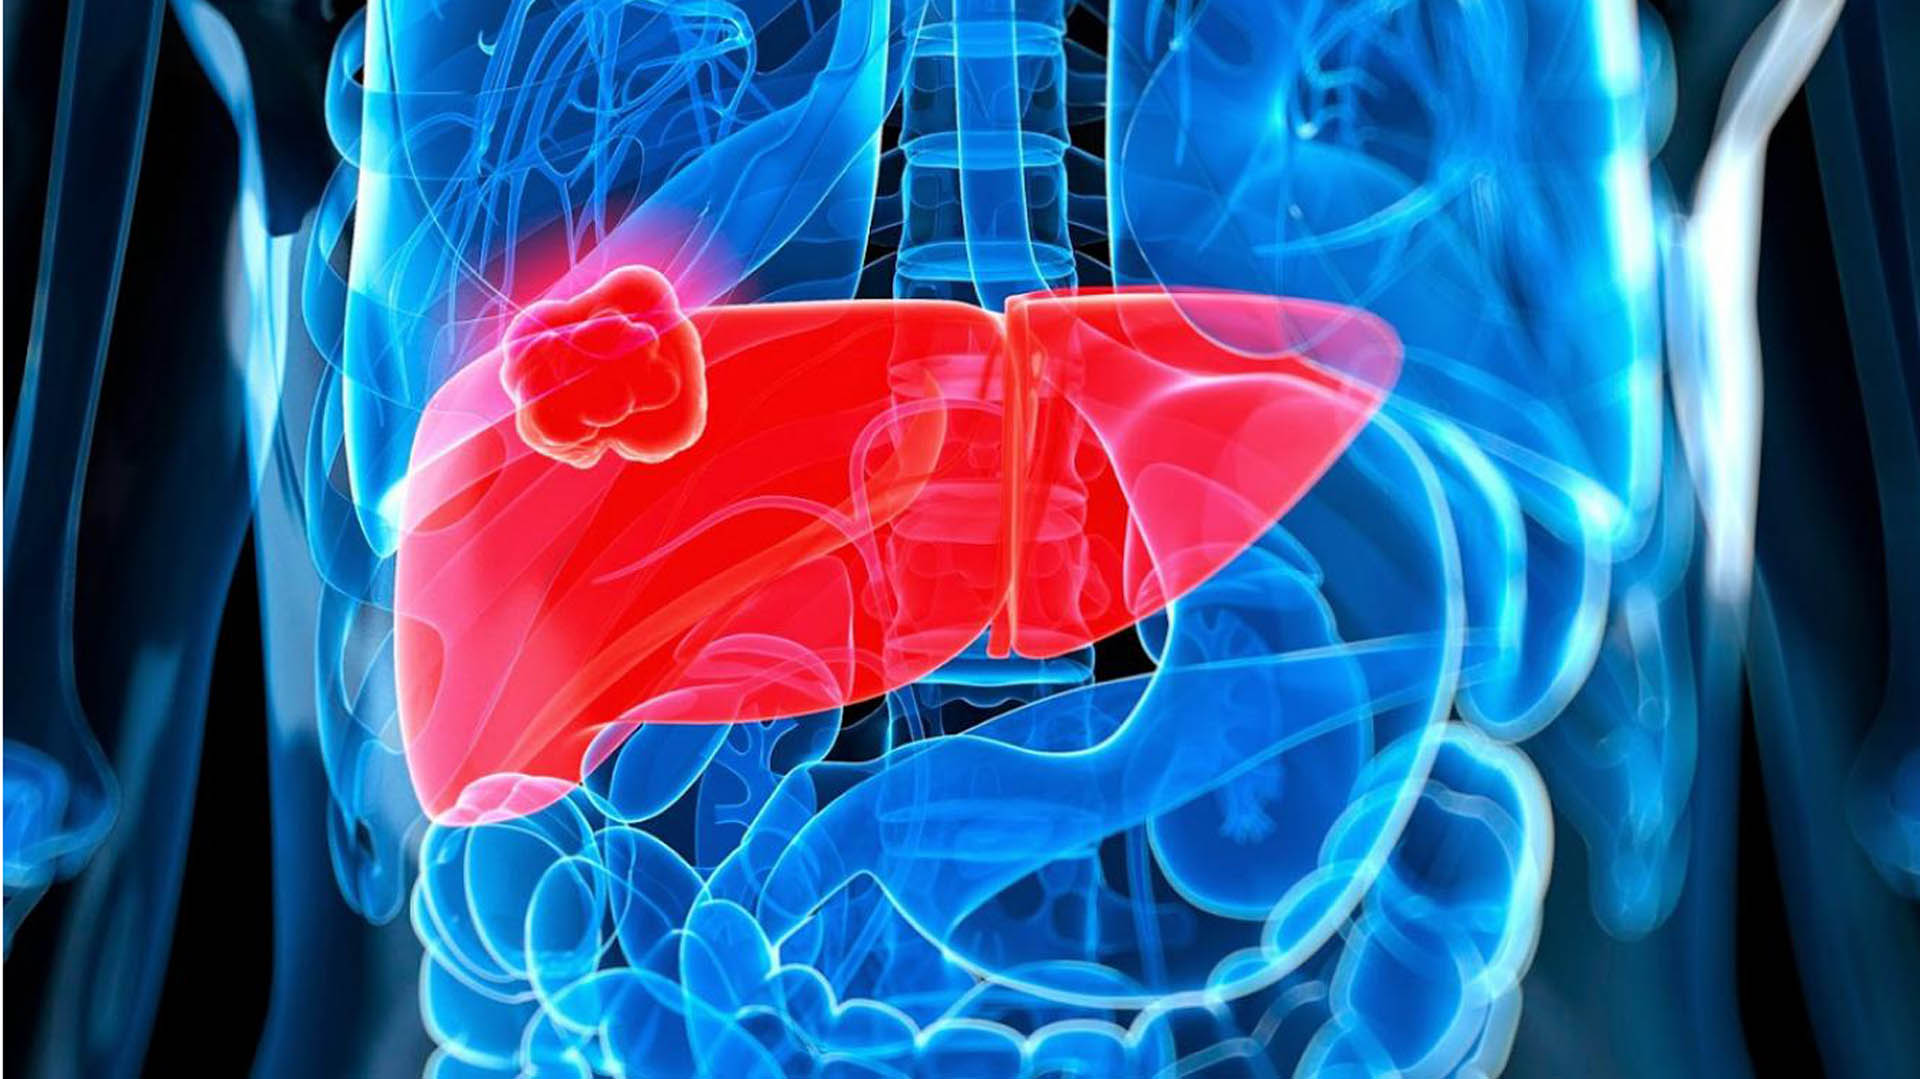 Los cánceres de hígado afectan principalmente a personas con cirrosis, hepatitis C, alcoholismo o hígado graso no alcohólico